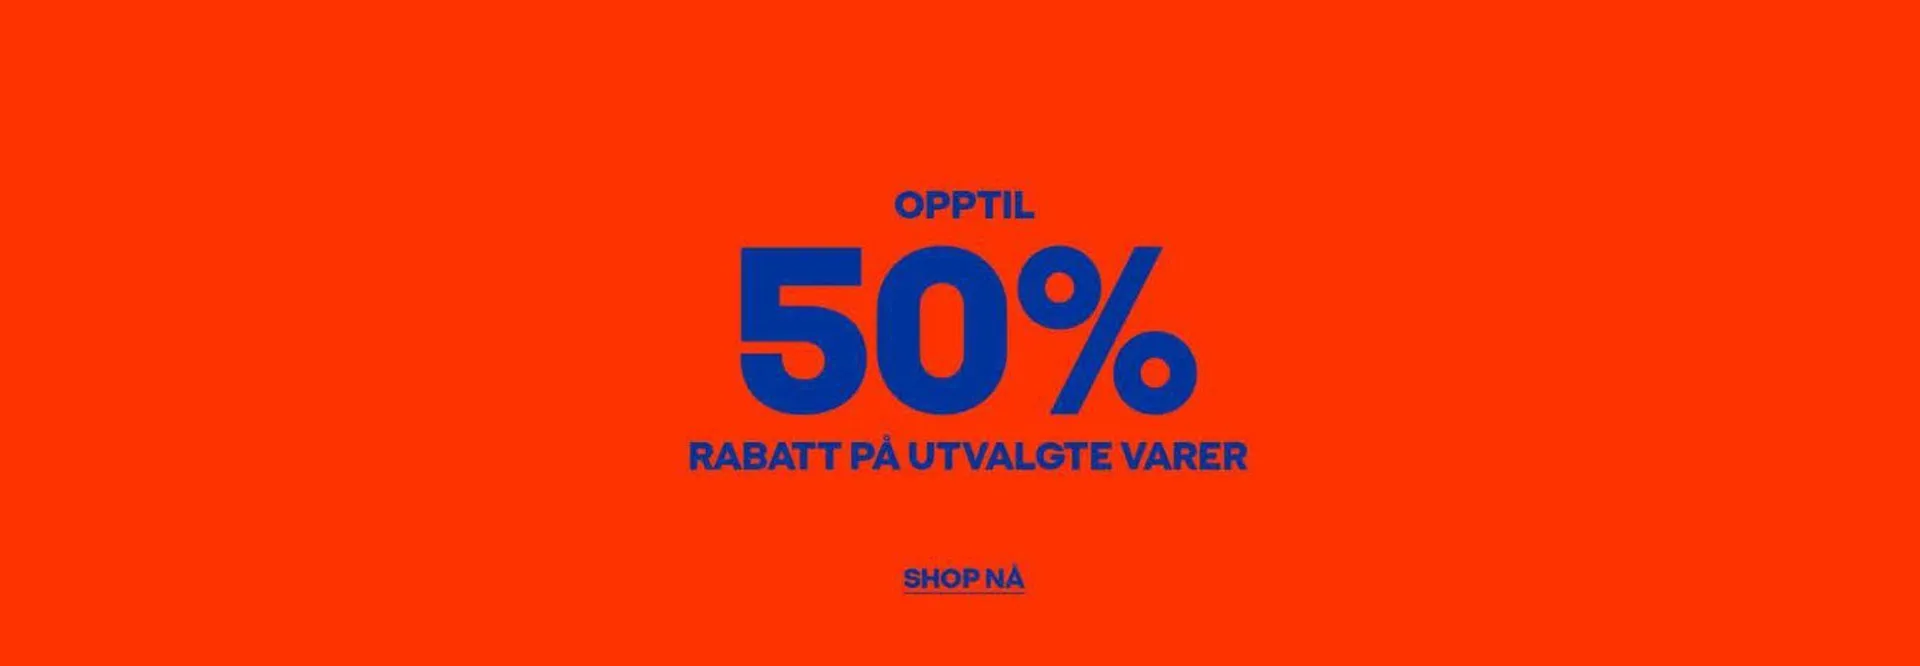 Opptil 50% Rabatt - 1